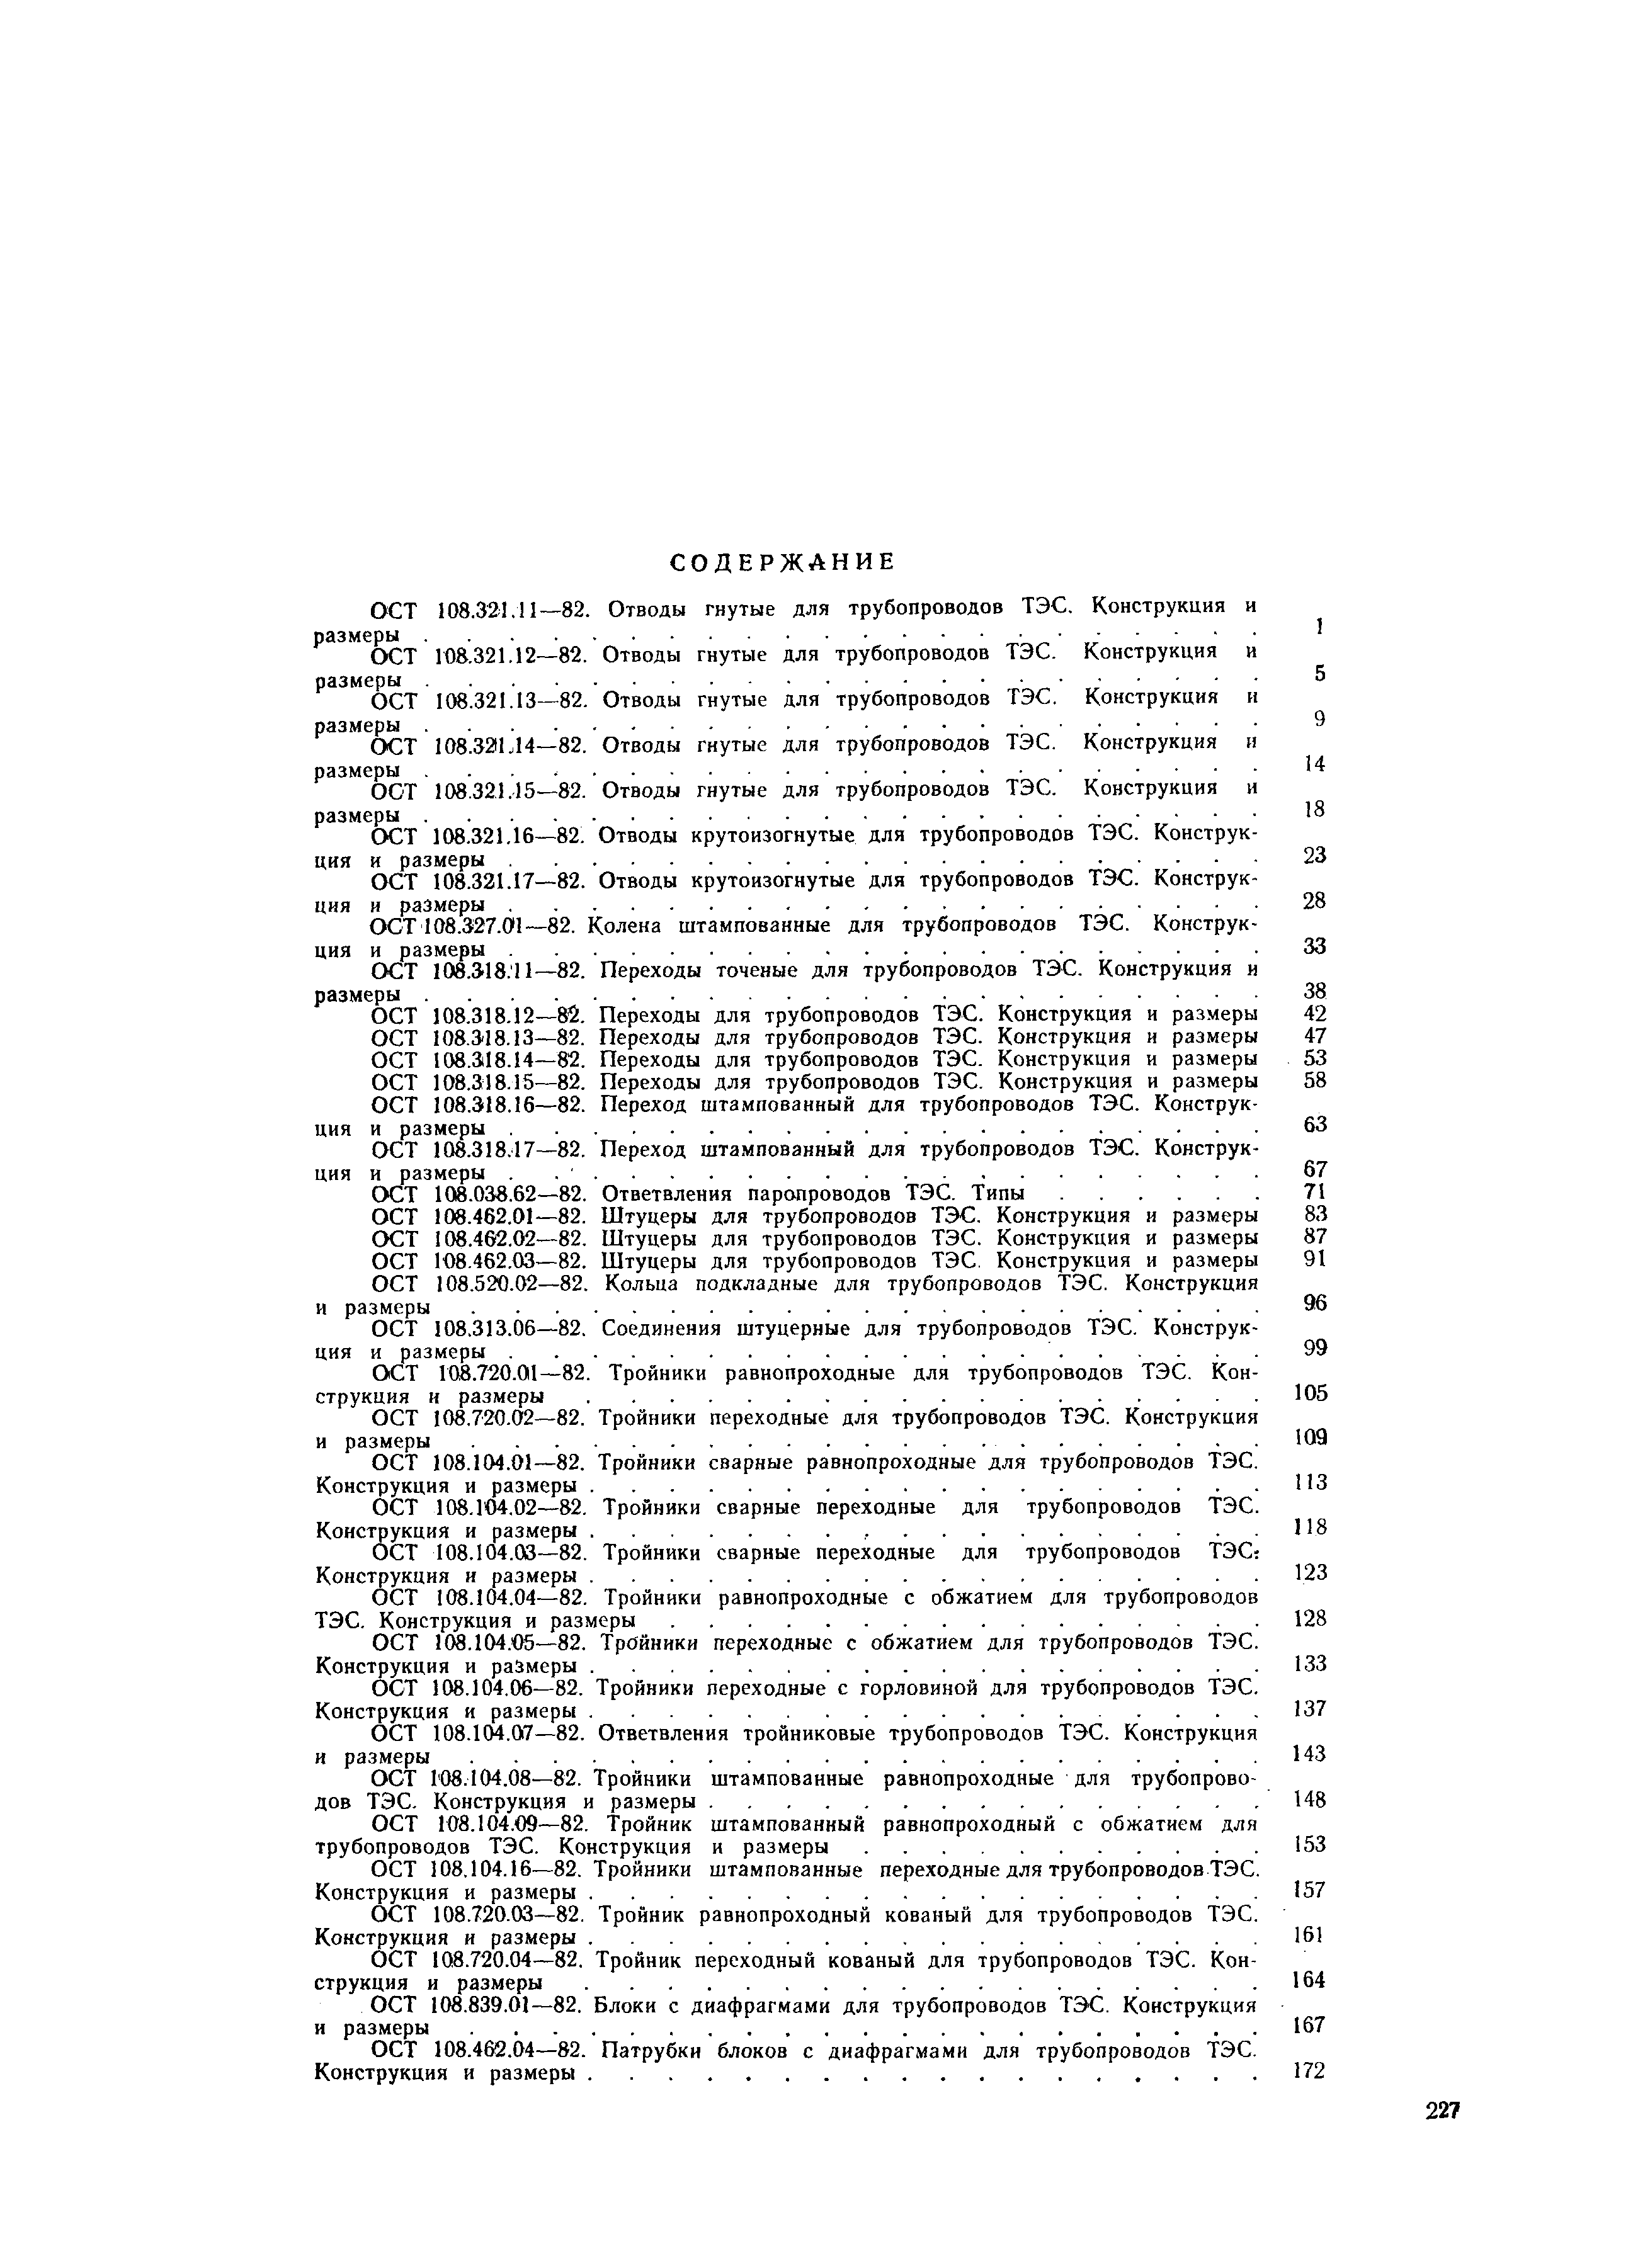 ОСТ 108.104.03-82